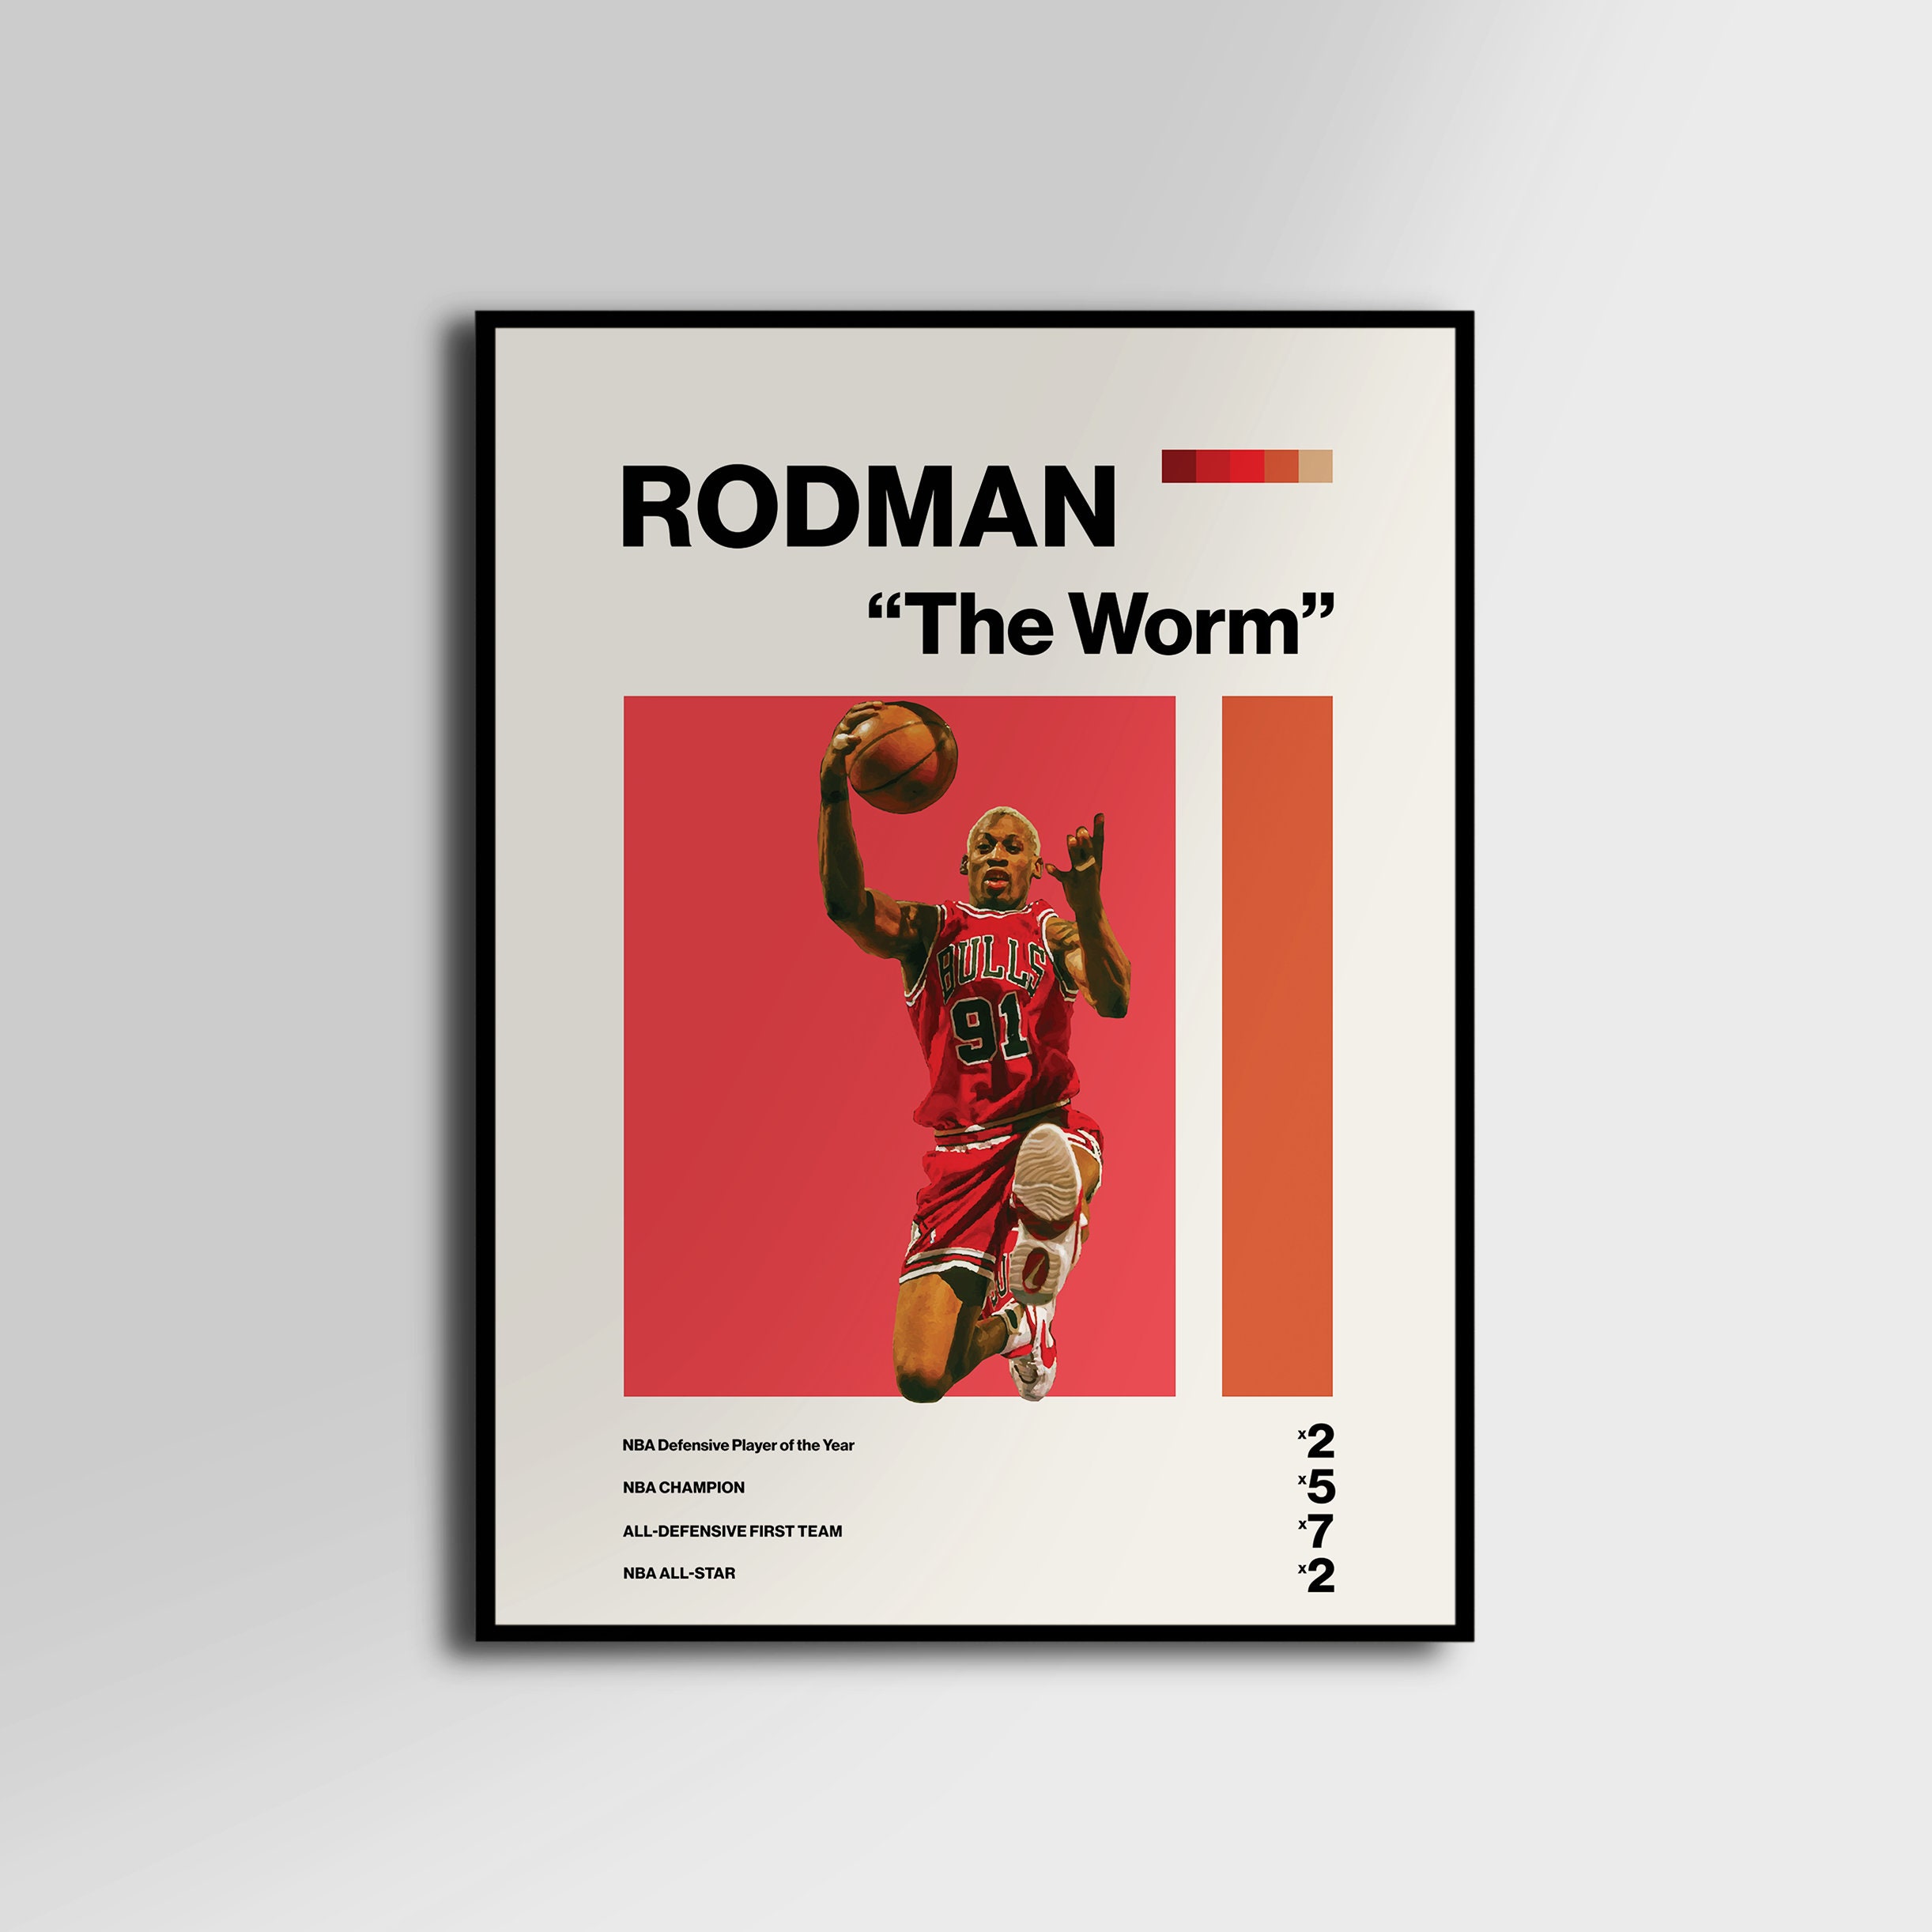 Dennis Rodman Poster -   Dennis rodman, Denis rodman, Fashion